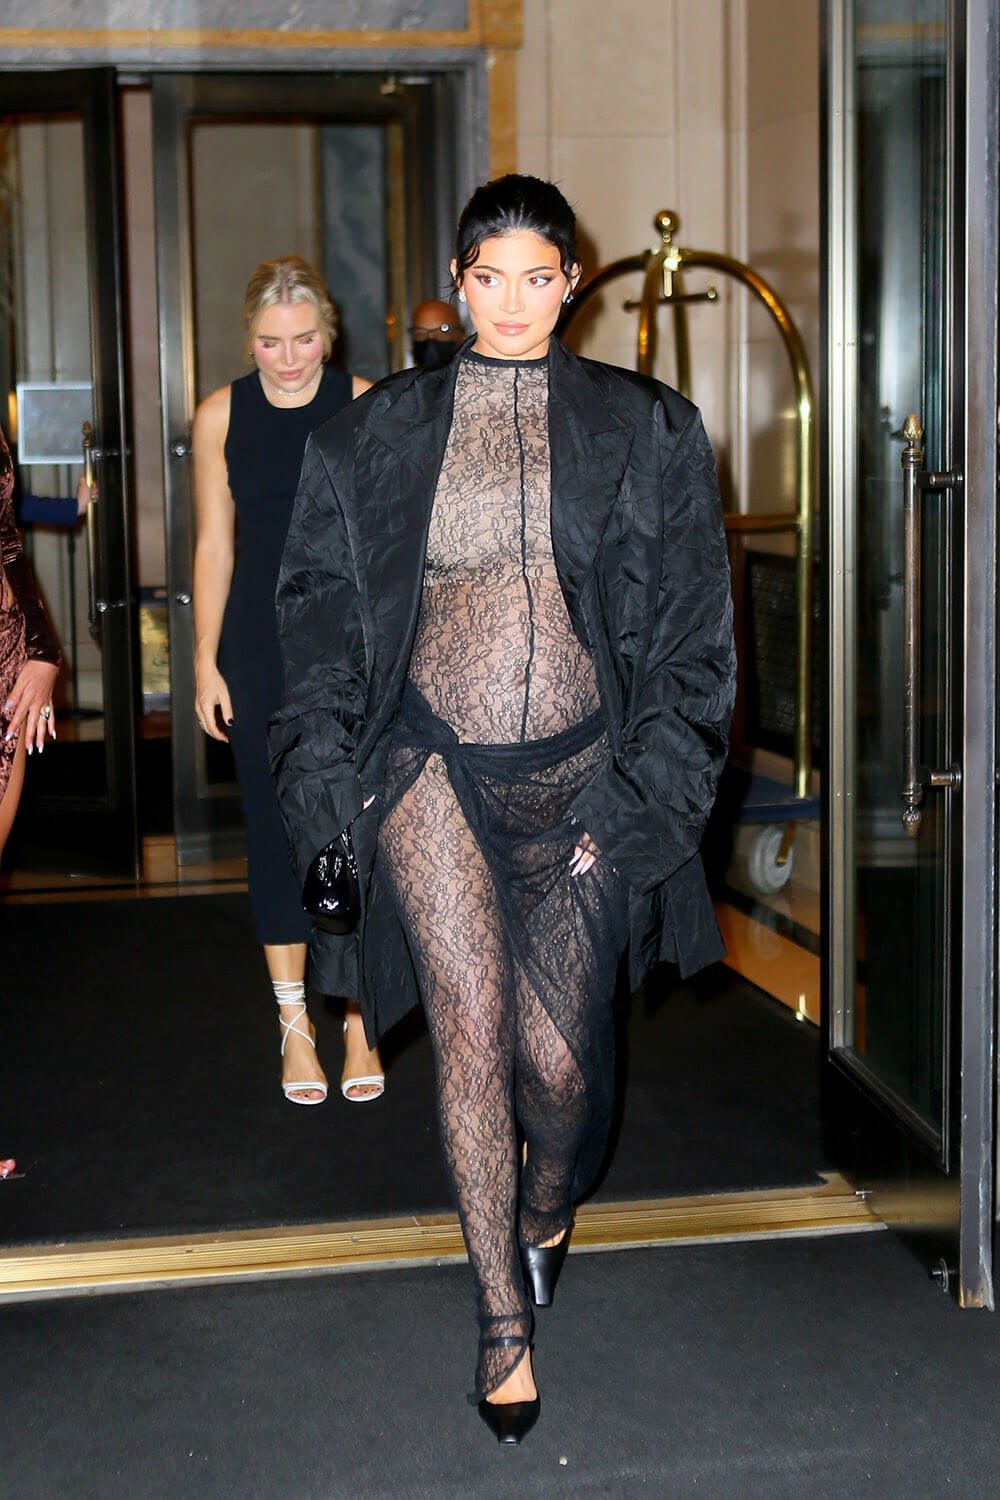 Ali noseča Kylie Jenner kopira stil noseče Kim Kardashian